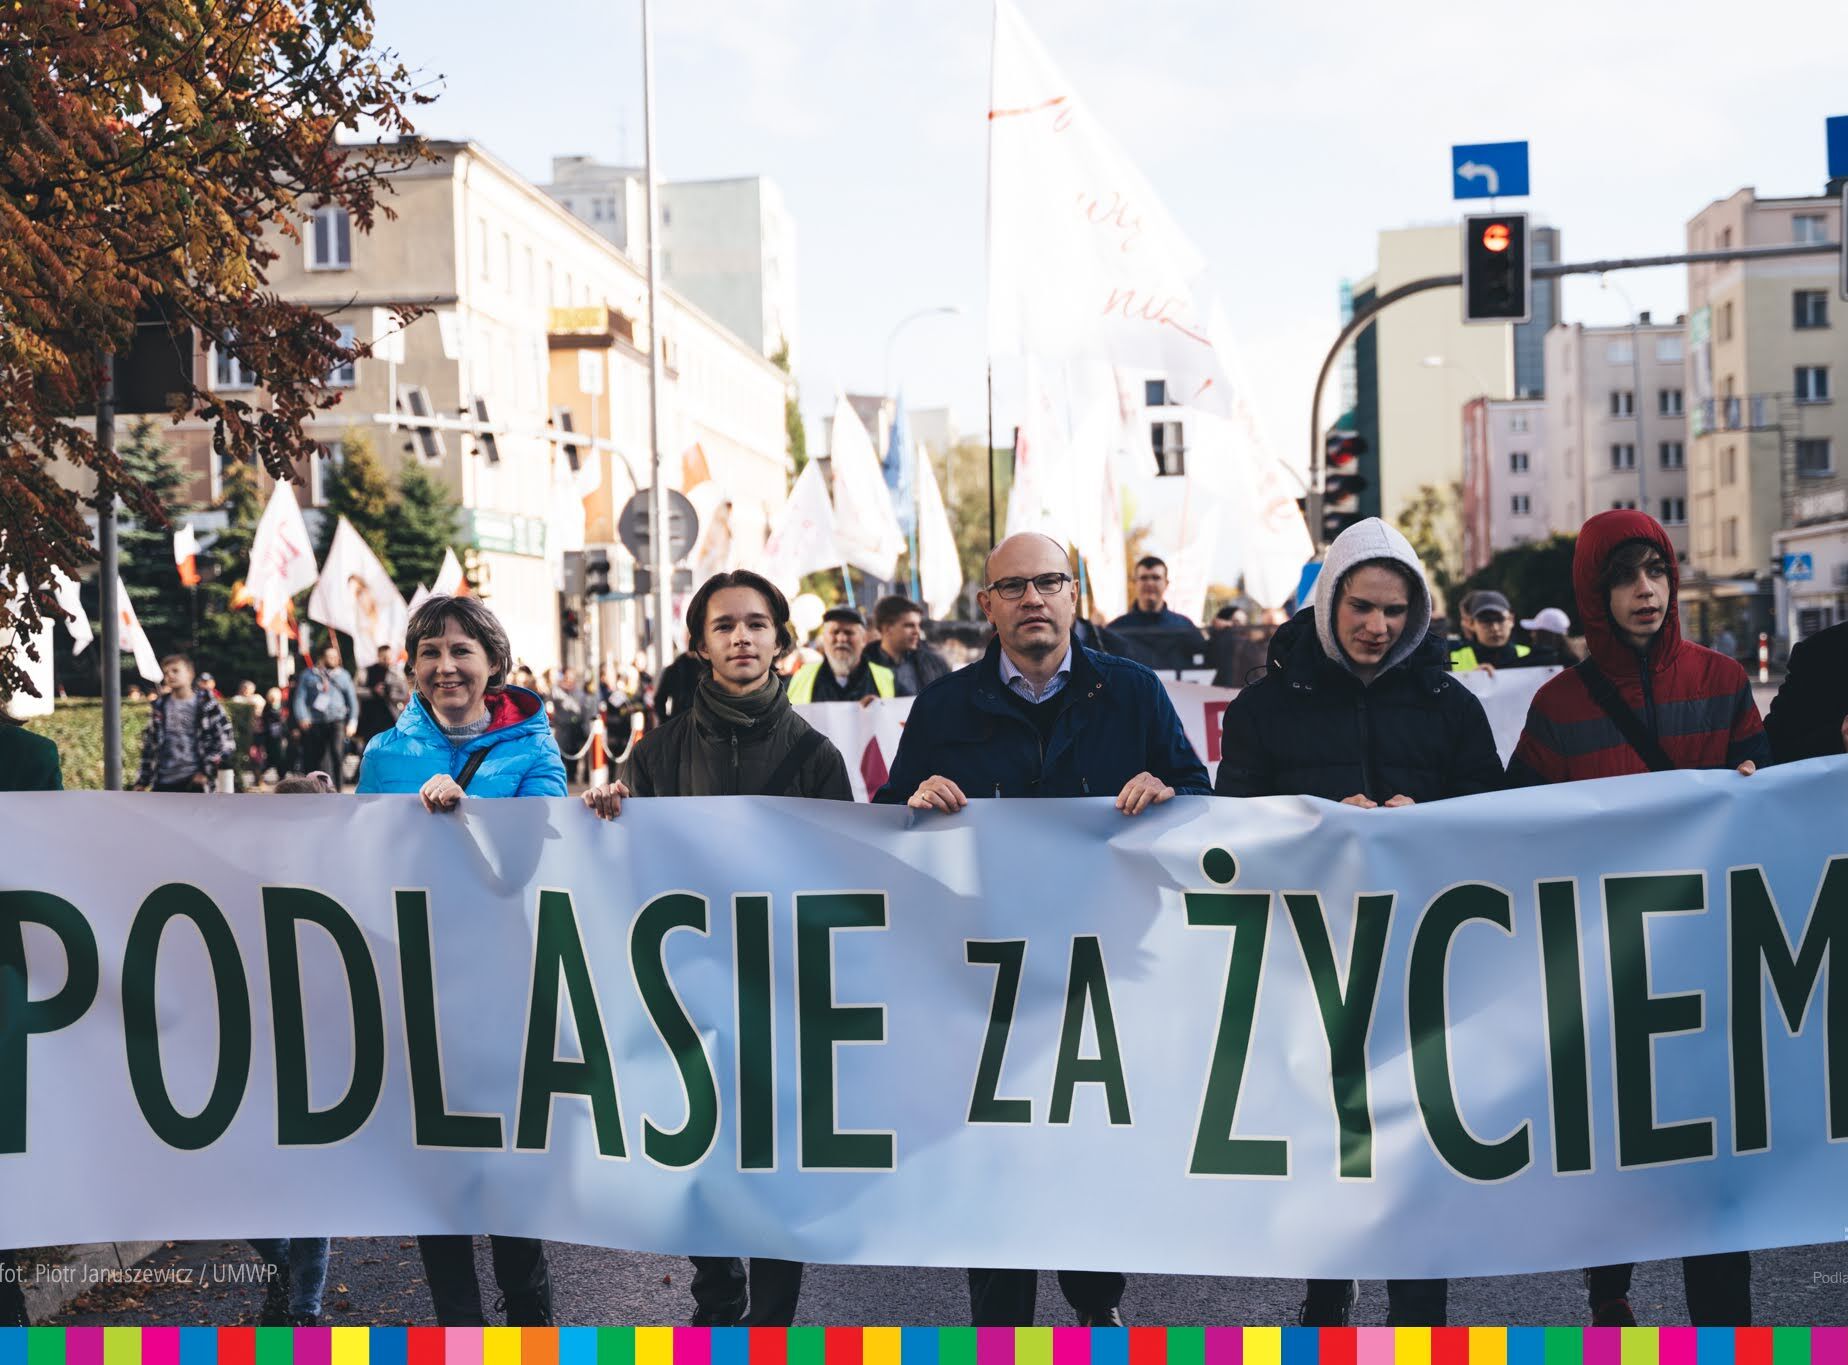 Marszałek Artur Kosicki i uczestnicy wydarzenia niosą baner z napisem "Podlasie za życiem"